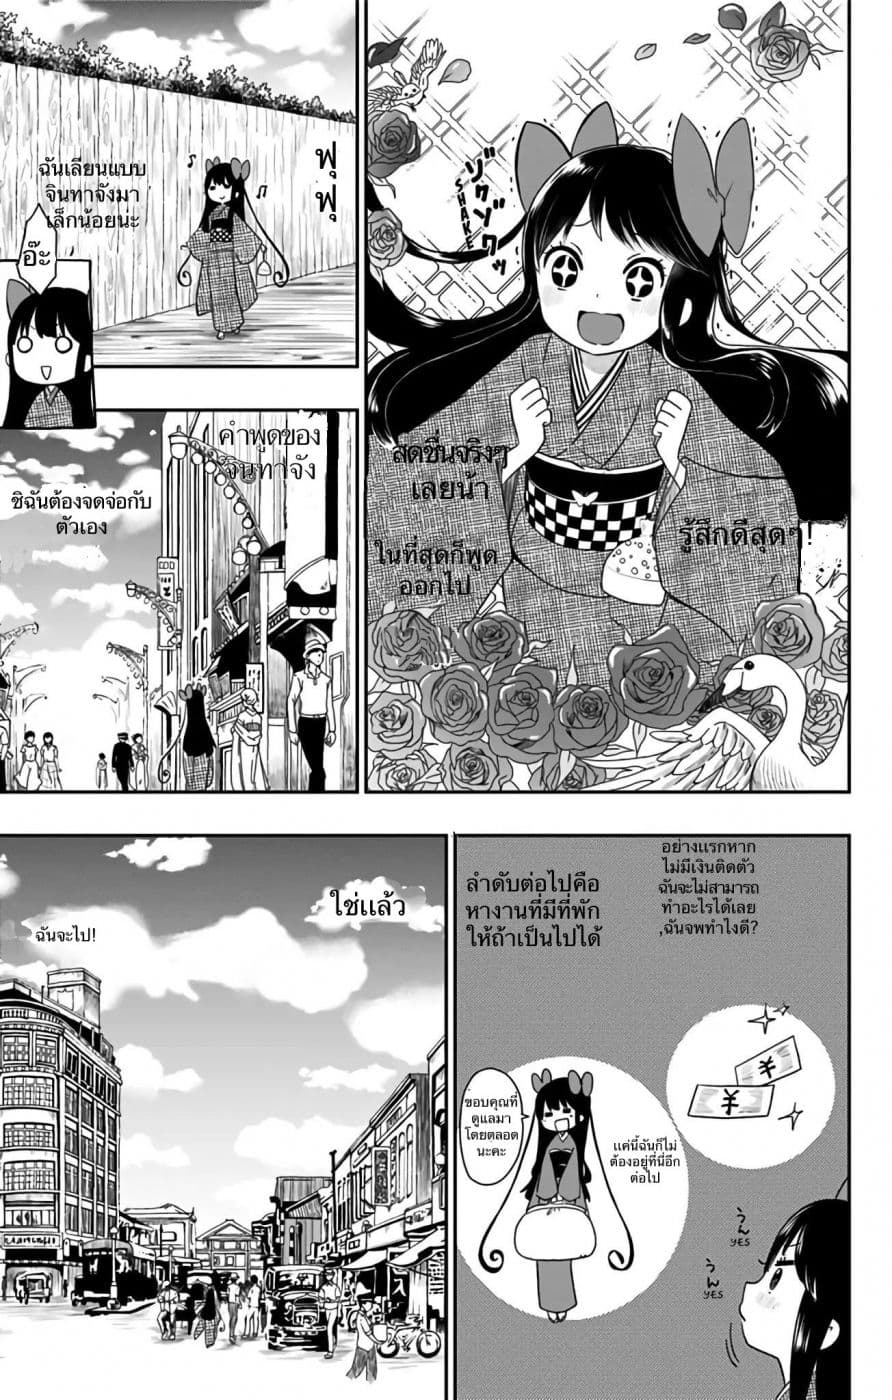 Shouwa Otome Otogibanashi เรื่องเล่าของสาวน้อย ยุคโชวะ ตอนที่ 4 (7)